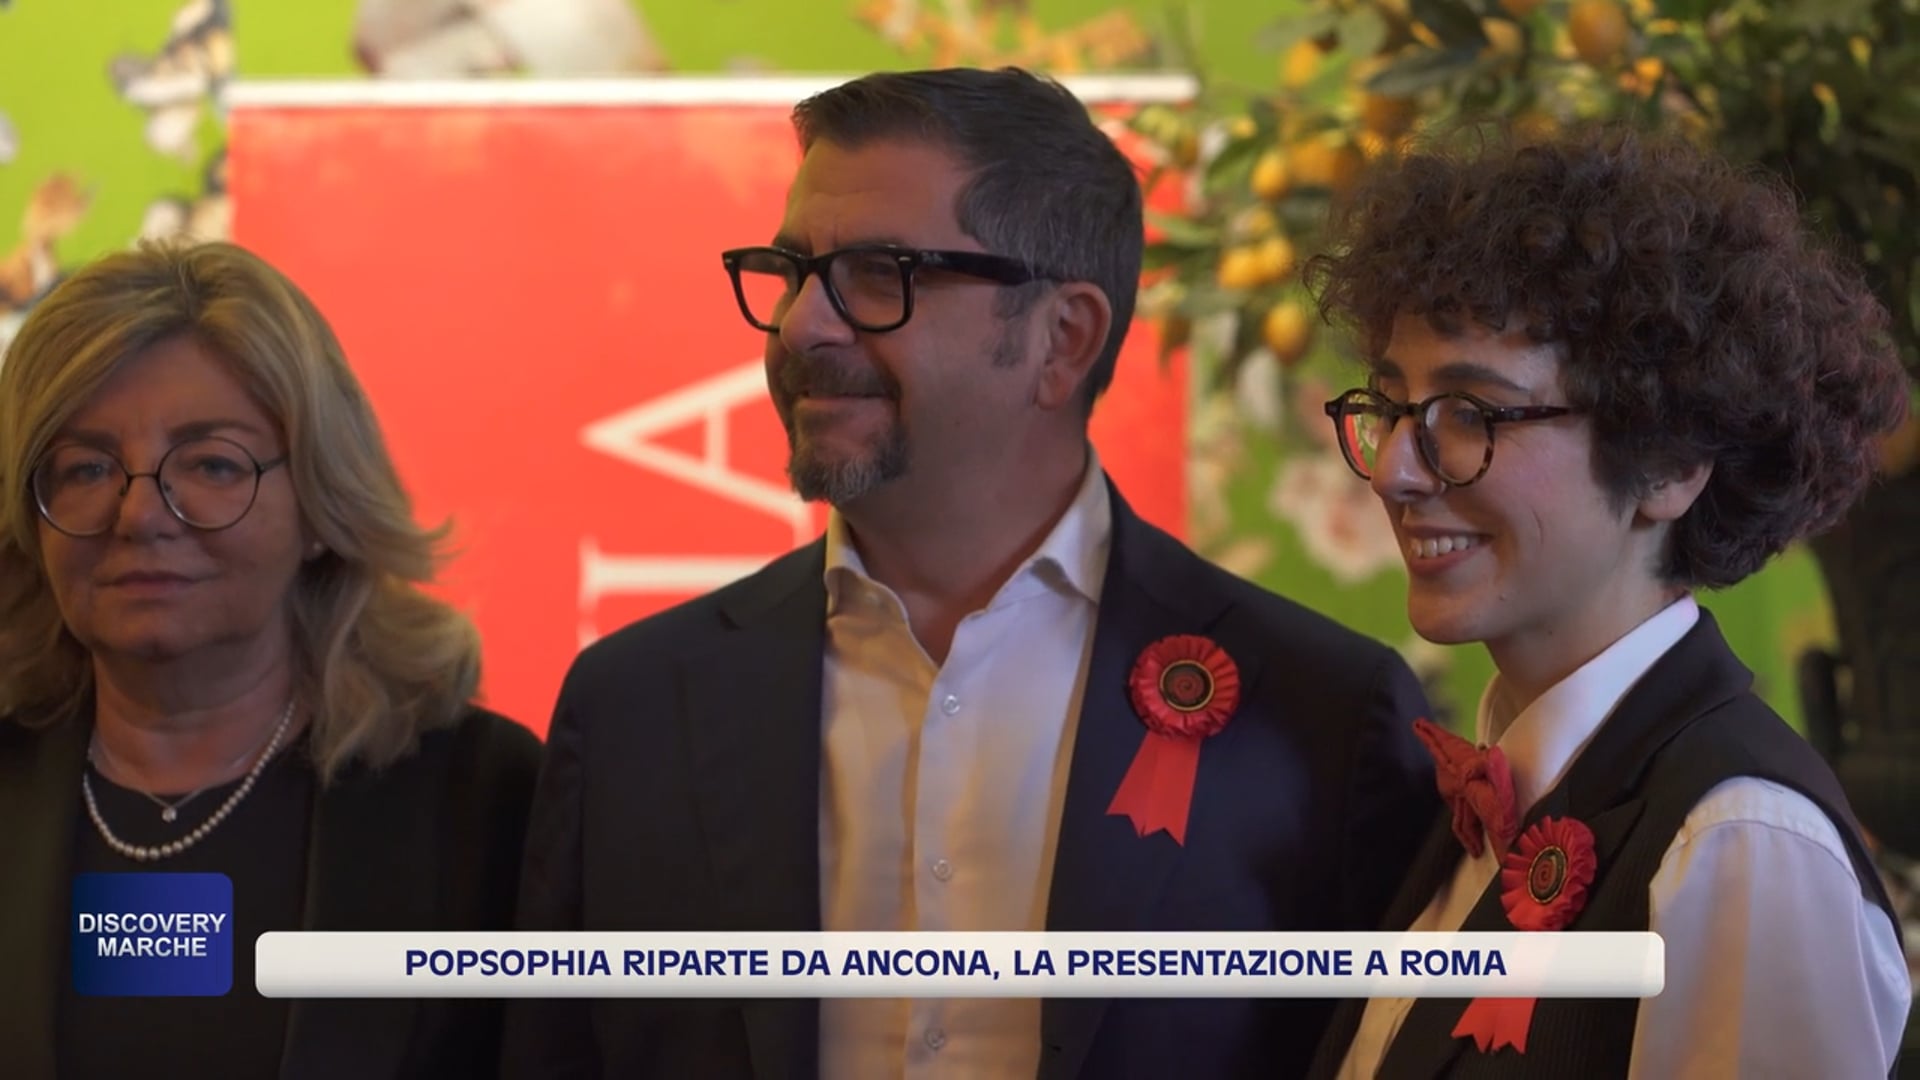 Popsophia approda ad Ancona: il debutto alla Mole - VIDEO